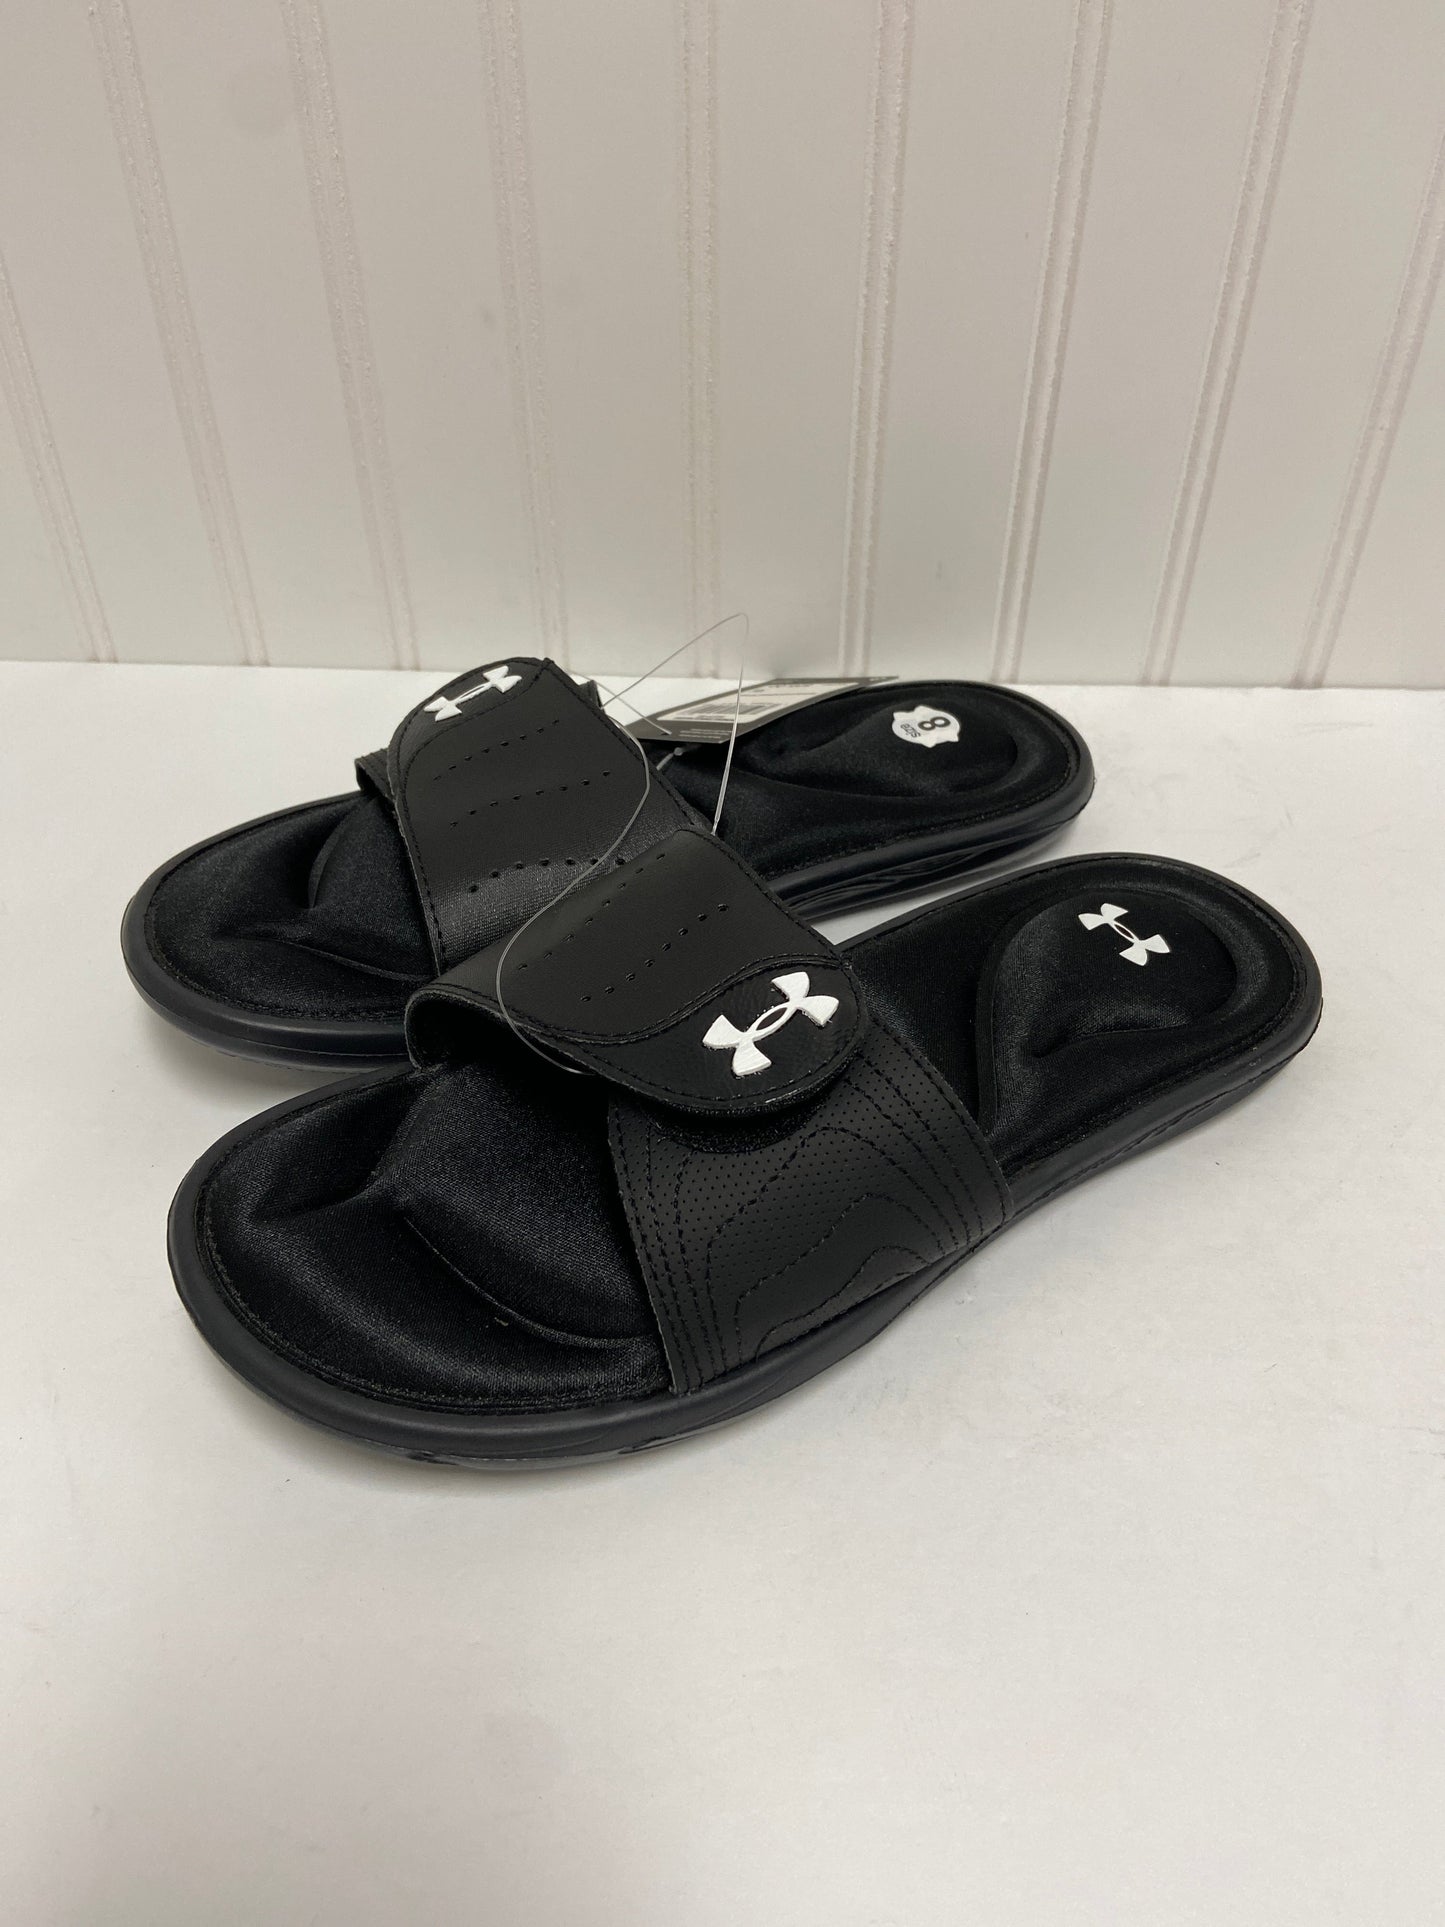 Black Sandals Flats Under Armour, Size 8